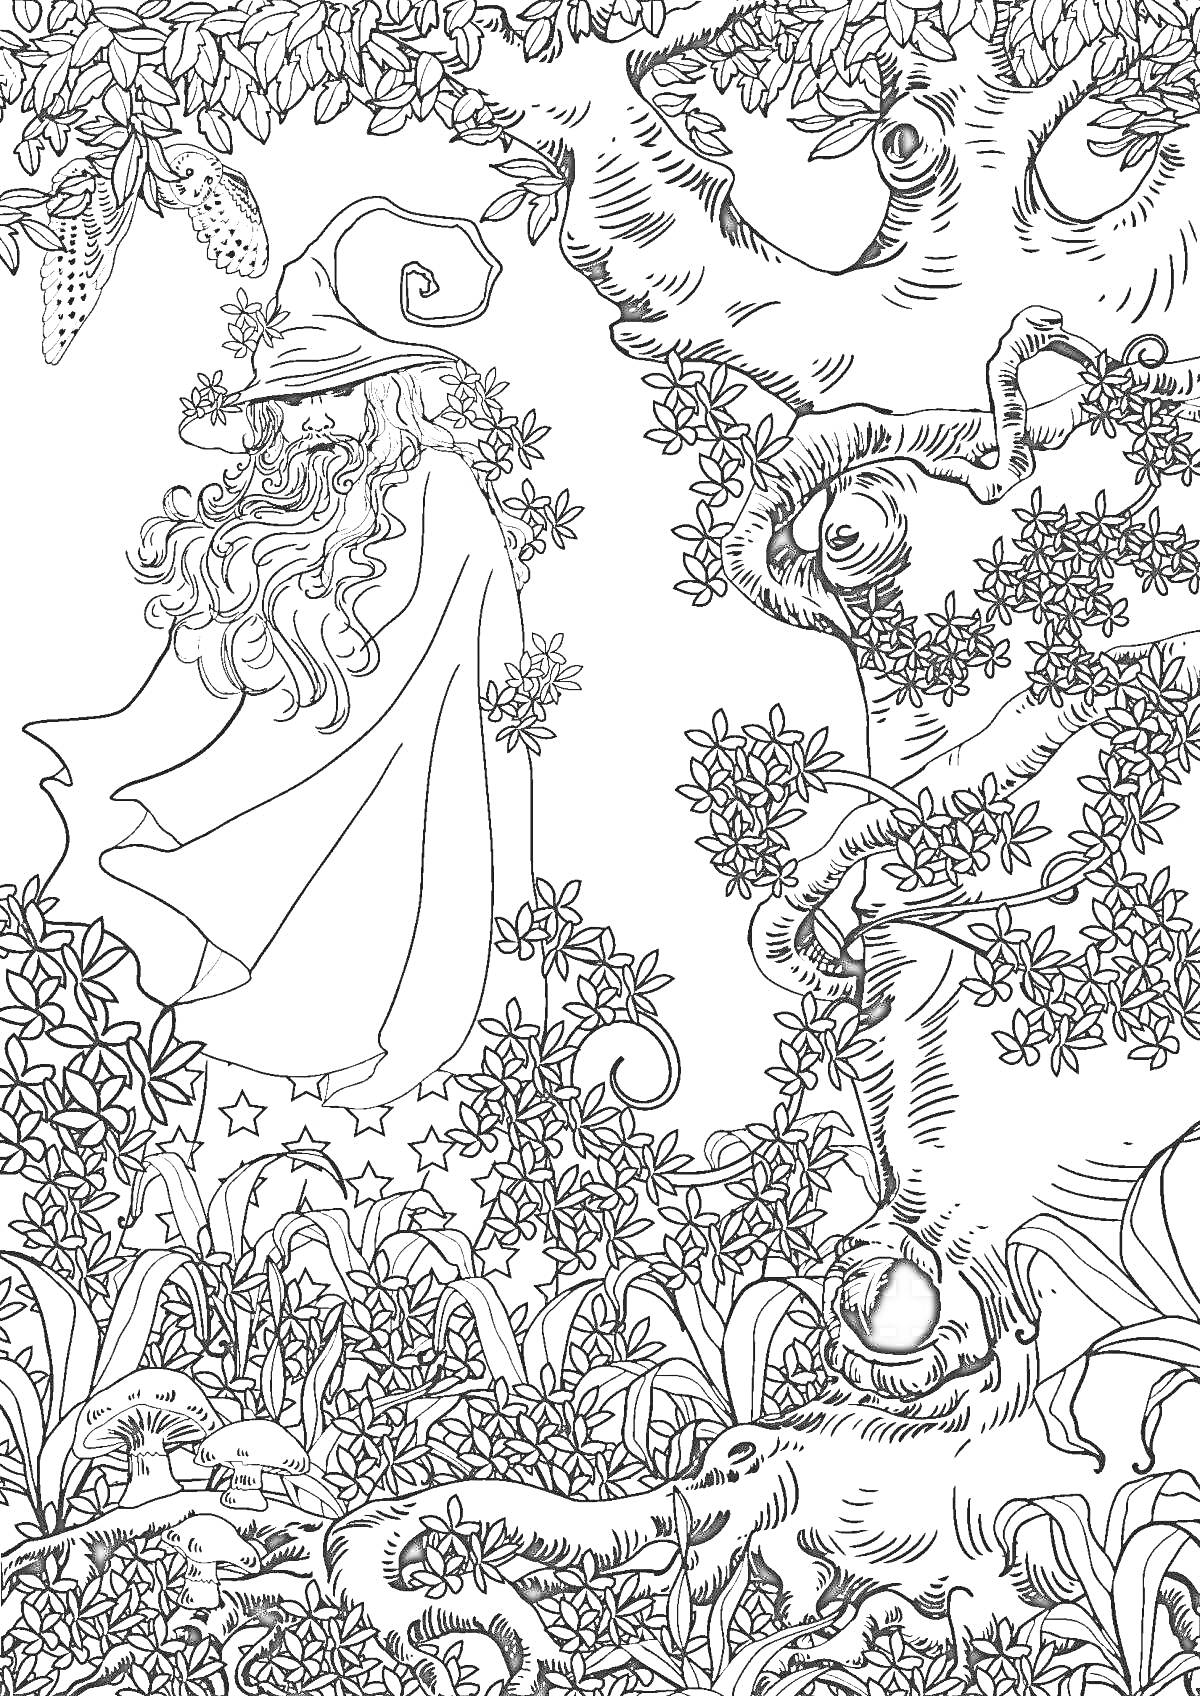 Раскраска Волшебник в лесу с деревьями, листвой, грибами и совой